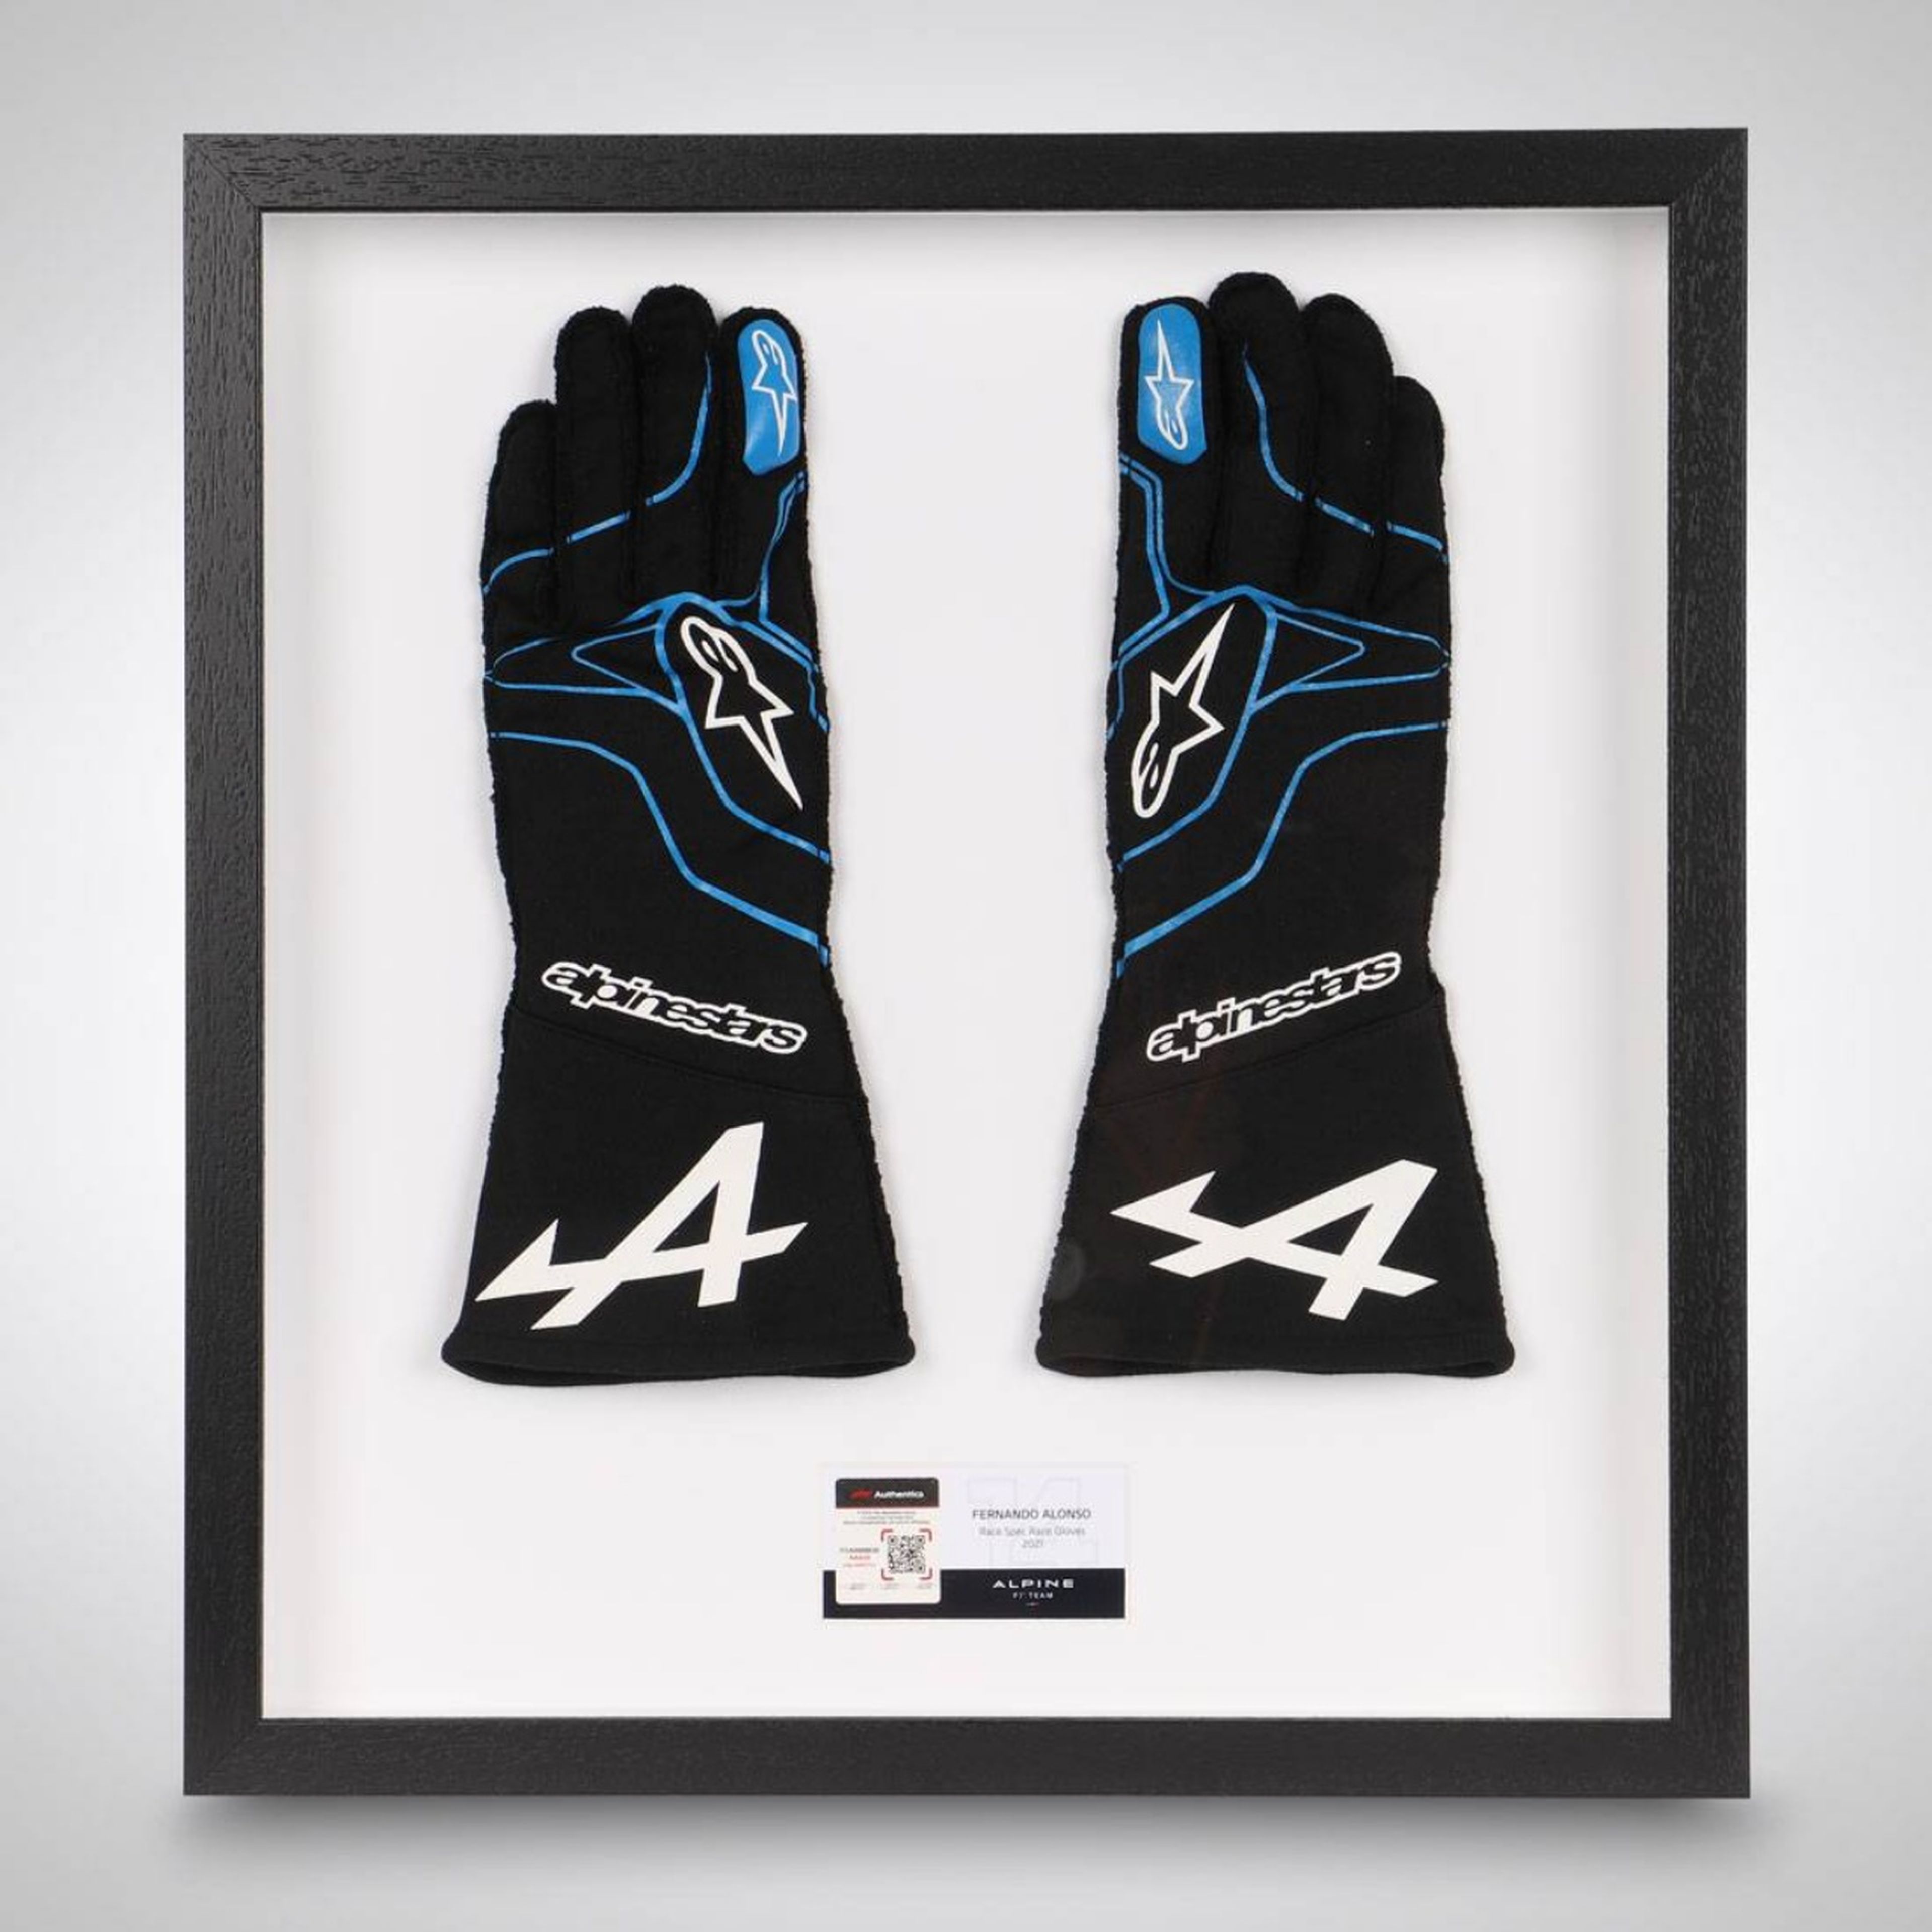 Estos son los guantes de Fernando Alonso... (sin usar). Cuestan 600,95€.